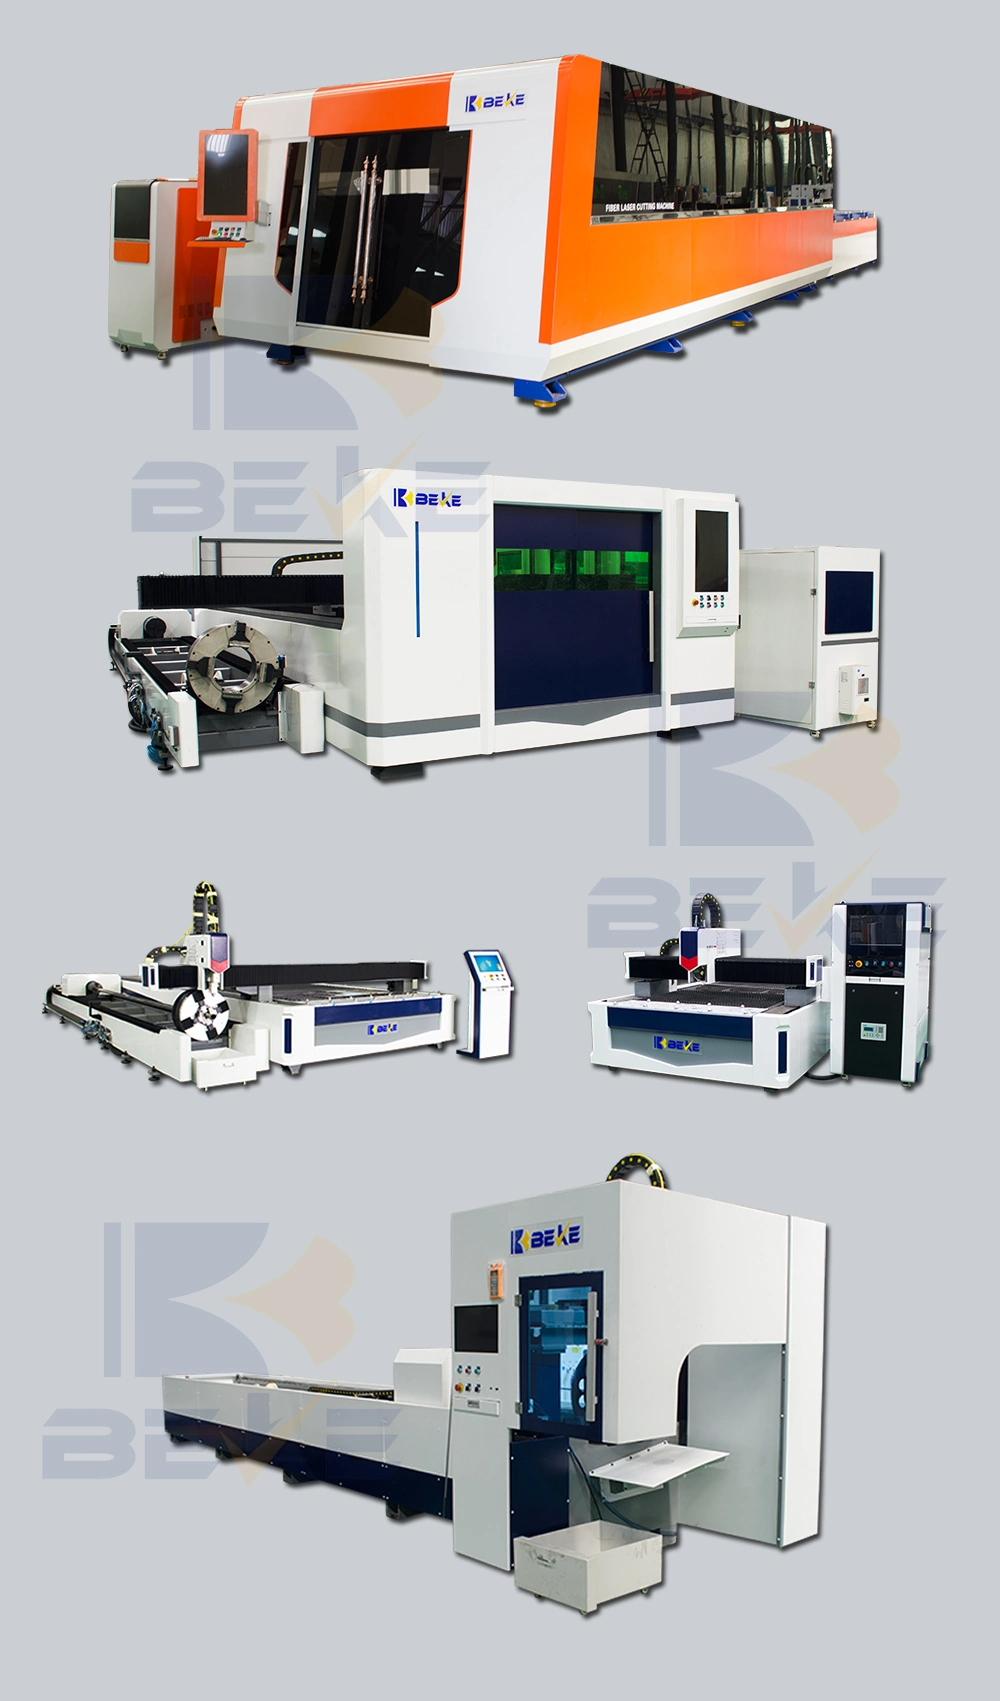 Beke Pipe Plate CNC Fiber Laser Cutting Machine Price / Optical Fiber Laser Cutter